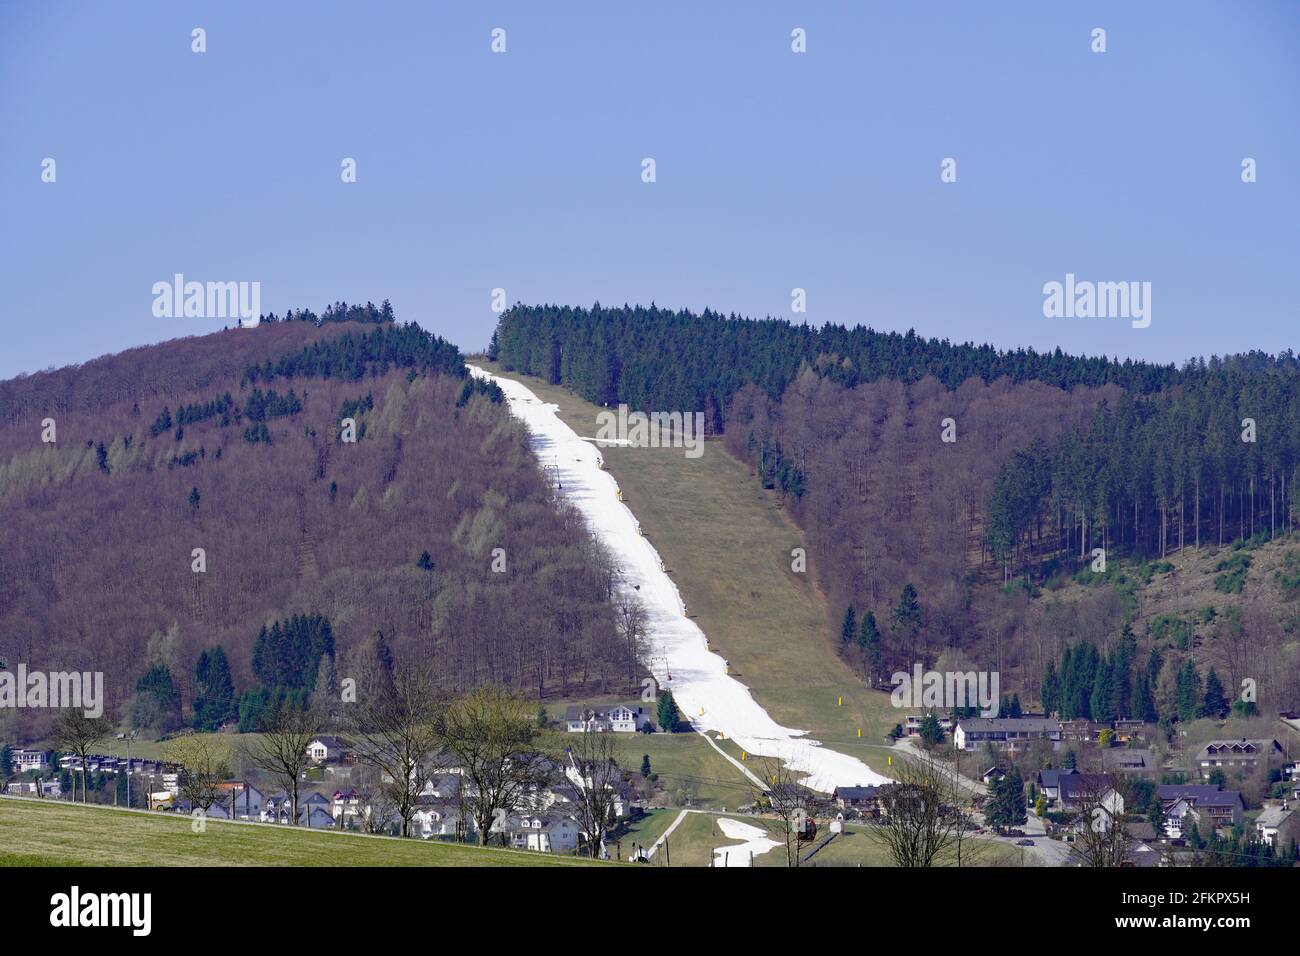 Skigebiet in Willingen, Sauerland. Künstlich angelegte Skipiste im Frühjahr. Wintersportgebiet in Nordrhein-Westfalen, Deutschland. Stockfoto